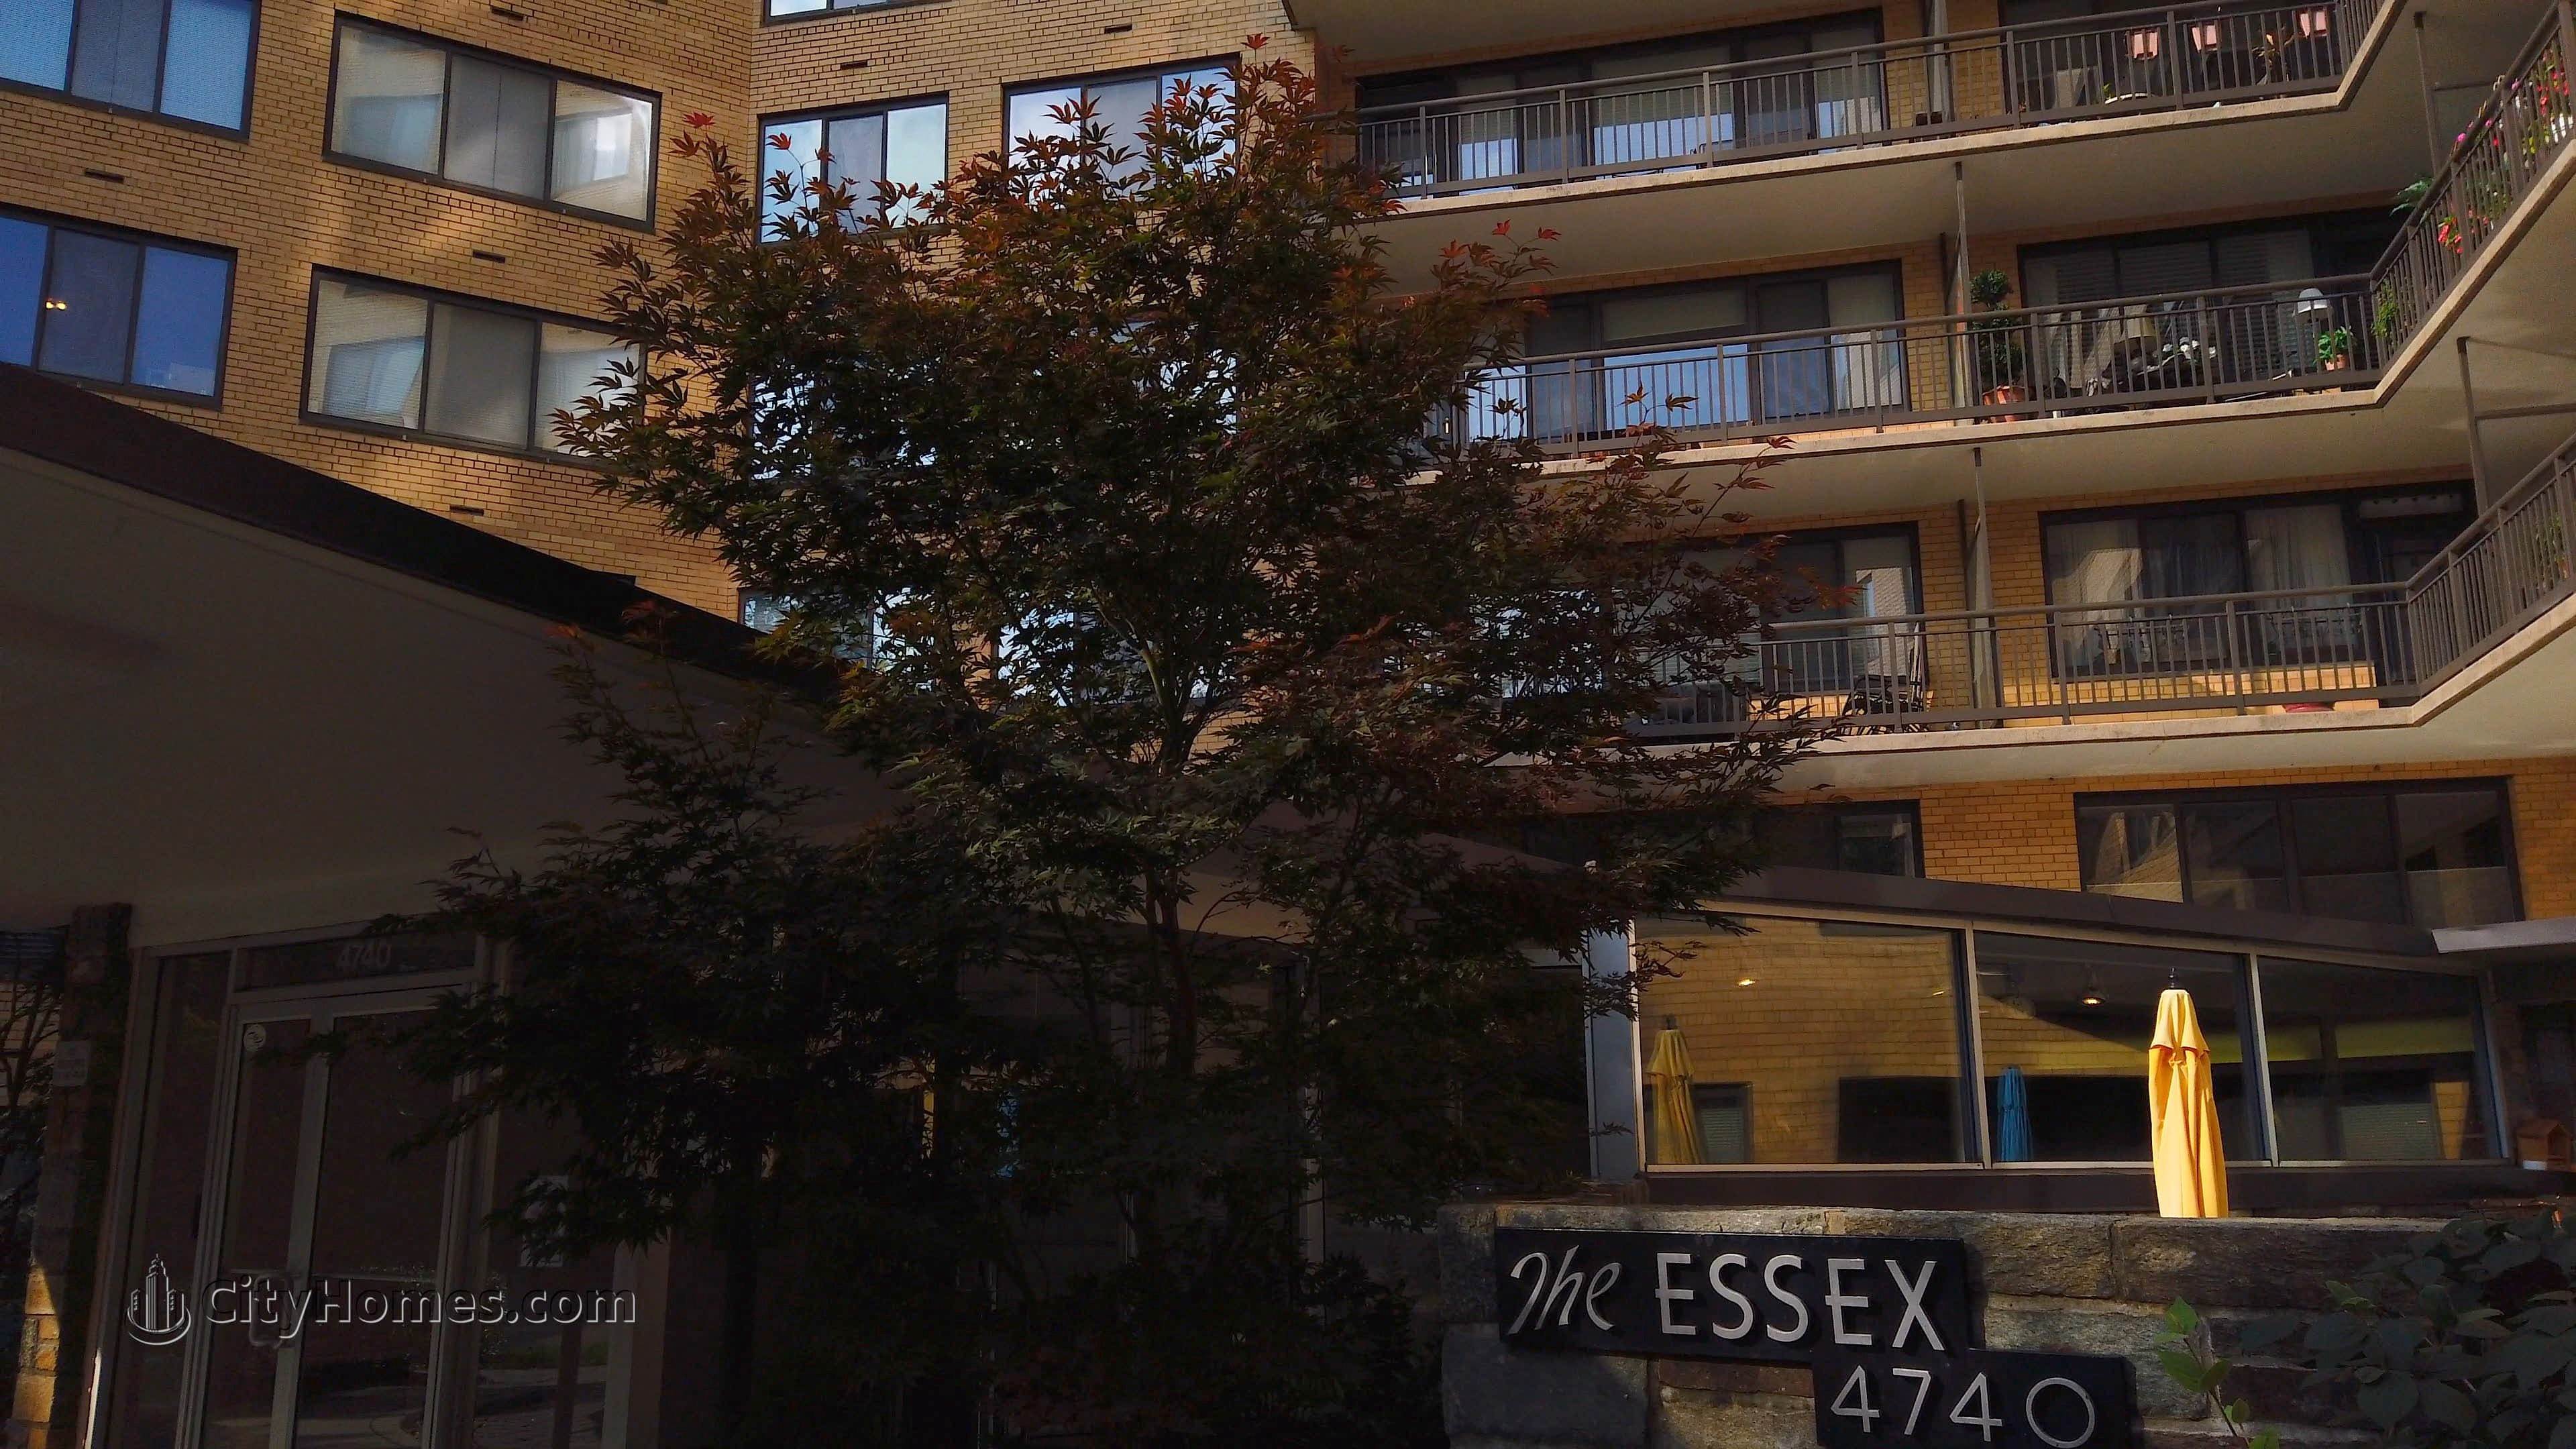 The Essex prédio em 4740 Connecticut Ave NW, Wakefield, Washington, DC 20008